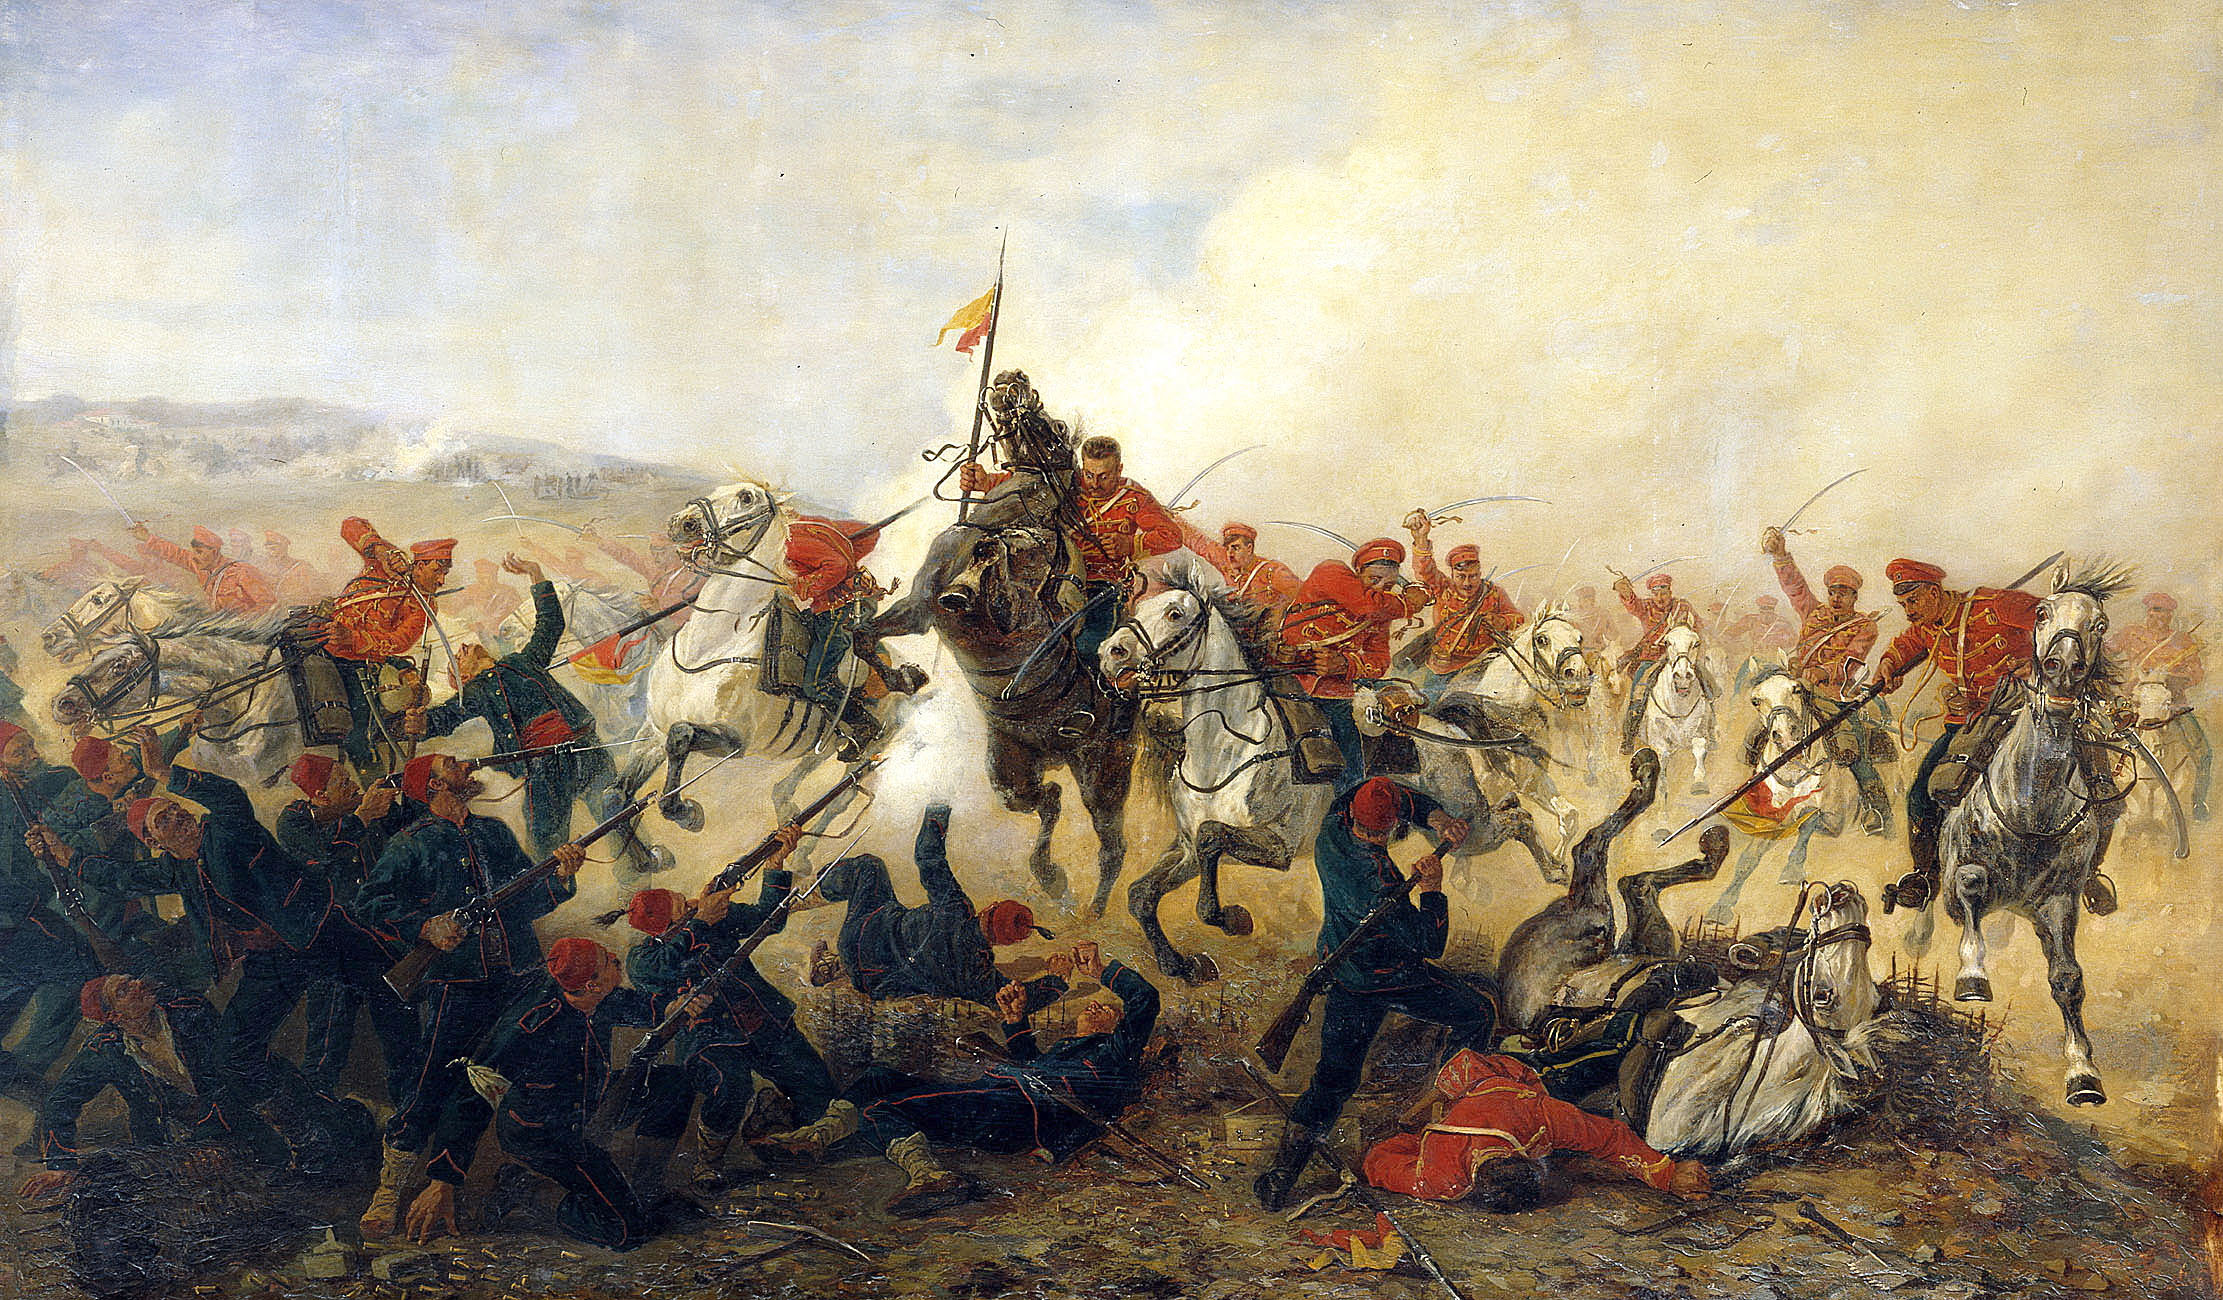 Battle of Tashkessen